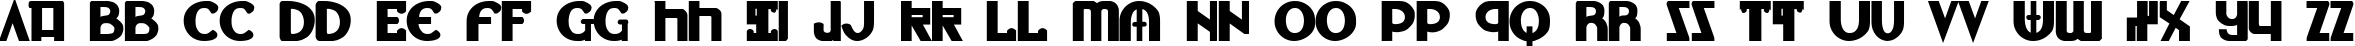 Пример написания английского алфавита шрифтом Lionheart Bold